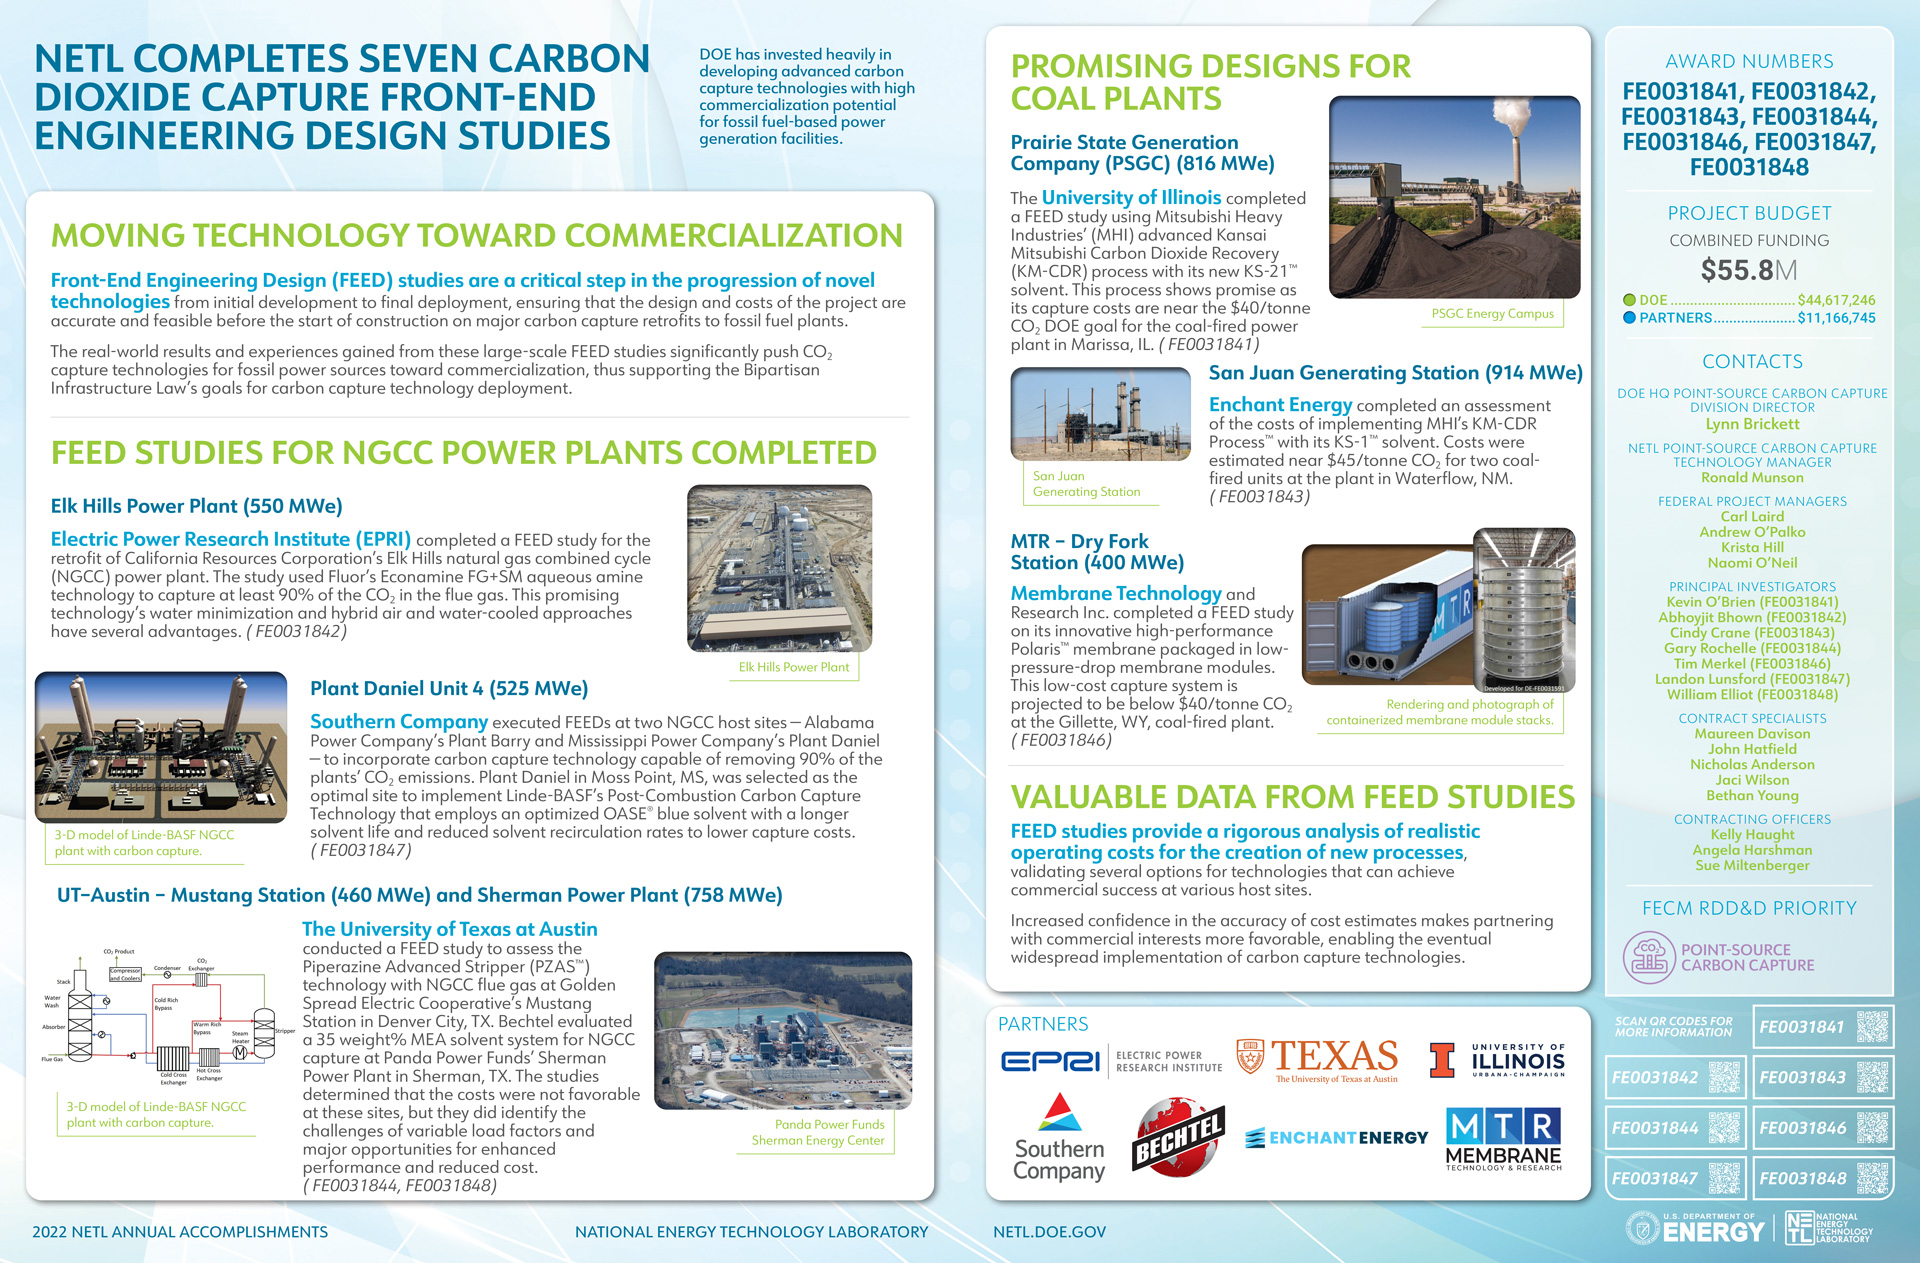 NETL Completes Seven Carbon Dioxide Capture Front-End Engineering Design Studies